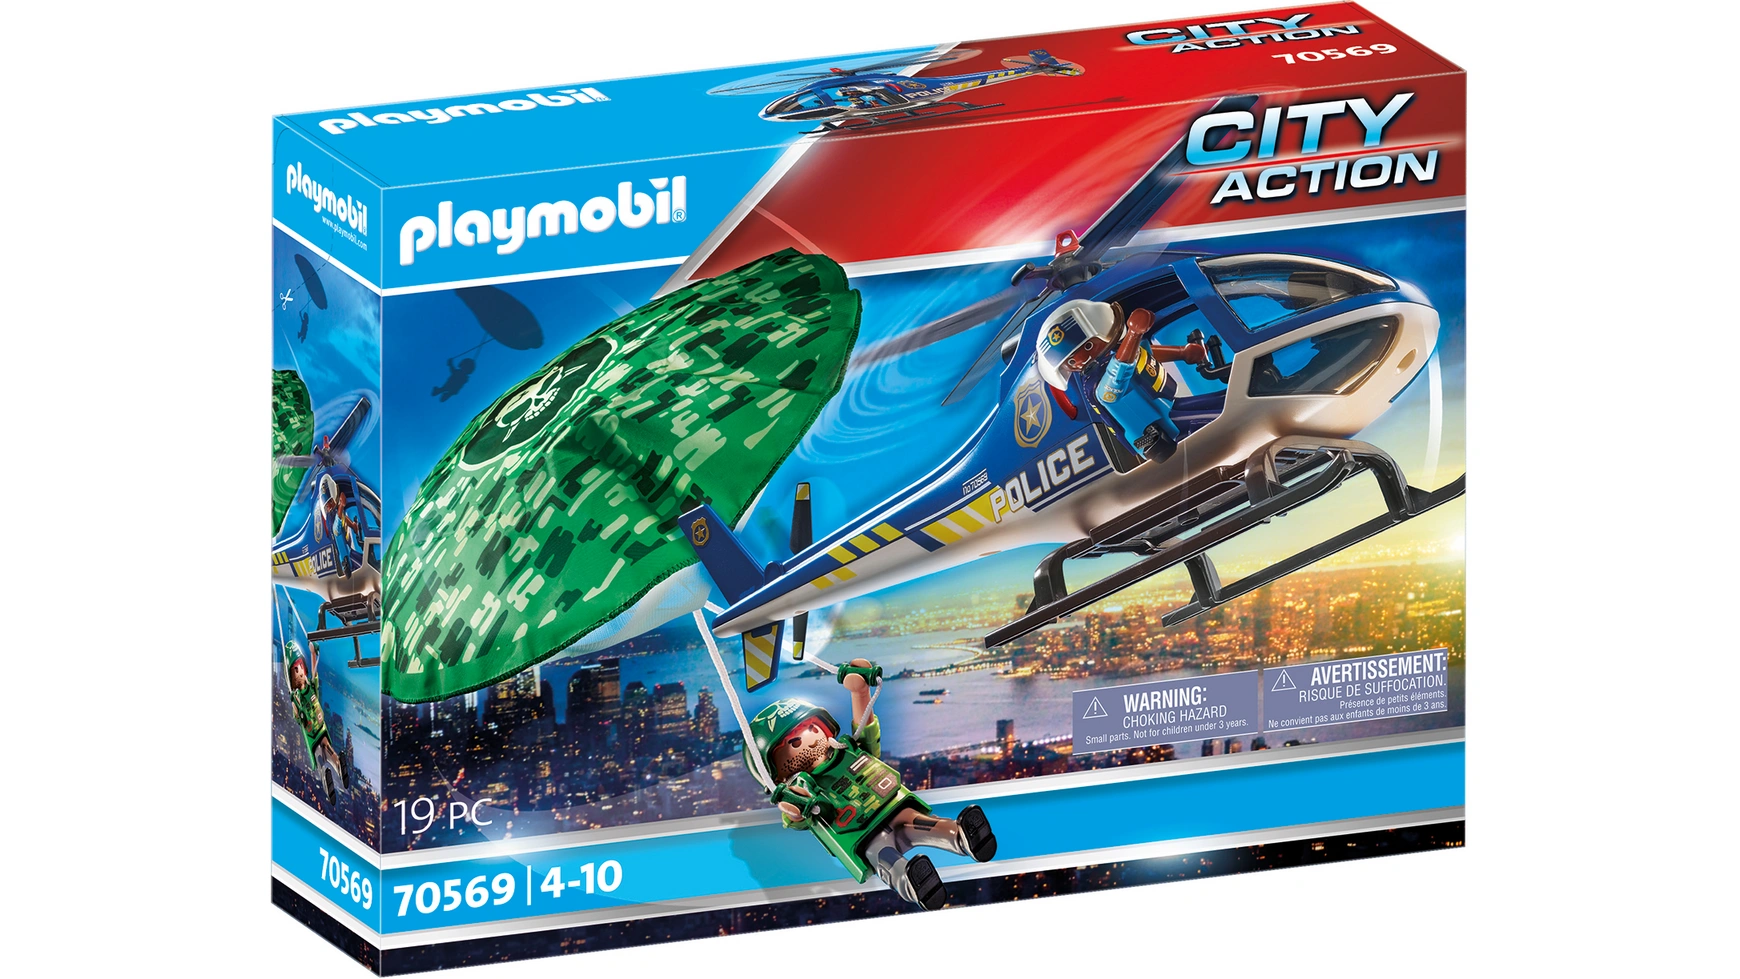 City action полицейский вертолет: погоня с парашютом Playmobil